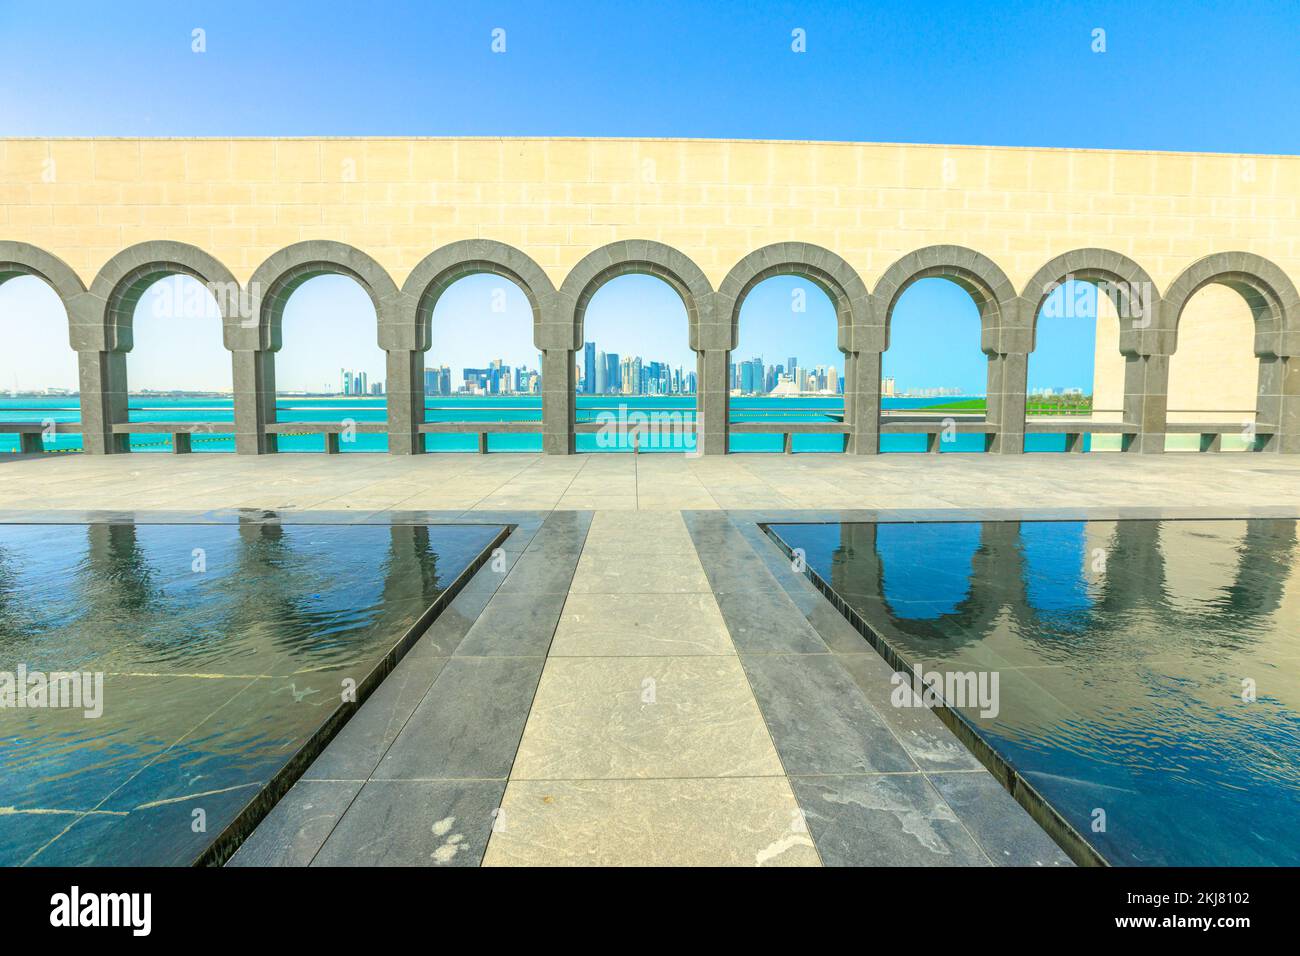 Doha, Katar - 16. Februar 2019: Blick auf den Bogengang und die reflektierenden Pools im Museum of Islamic Art oder MIA. Doha West Bay und Persischer Golf weiter Stockfoto